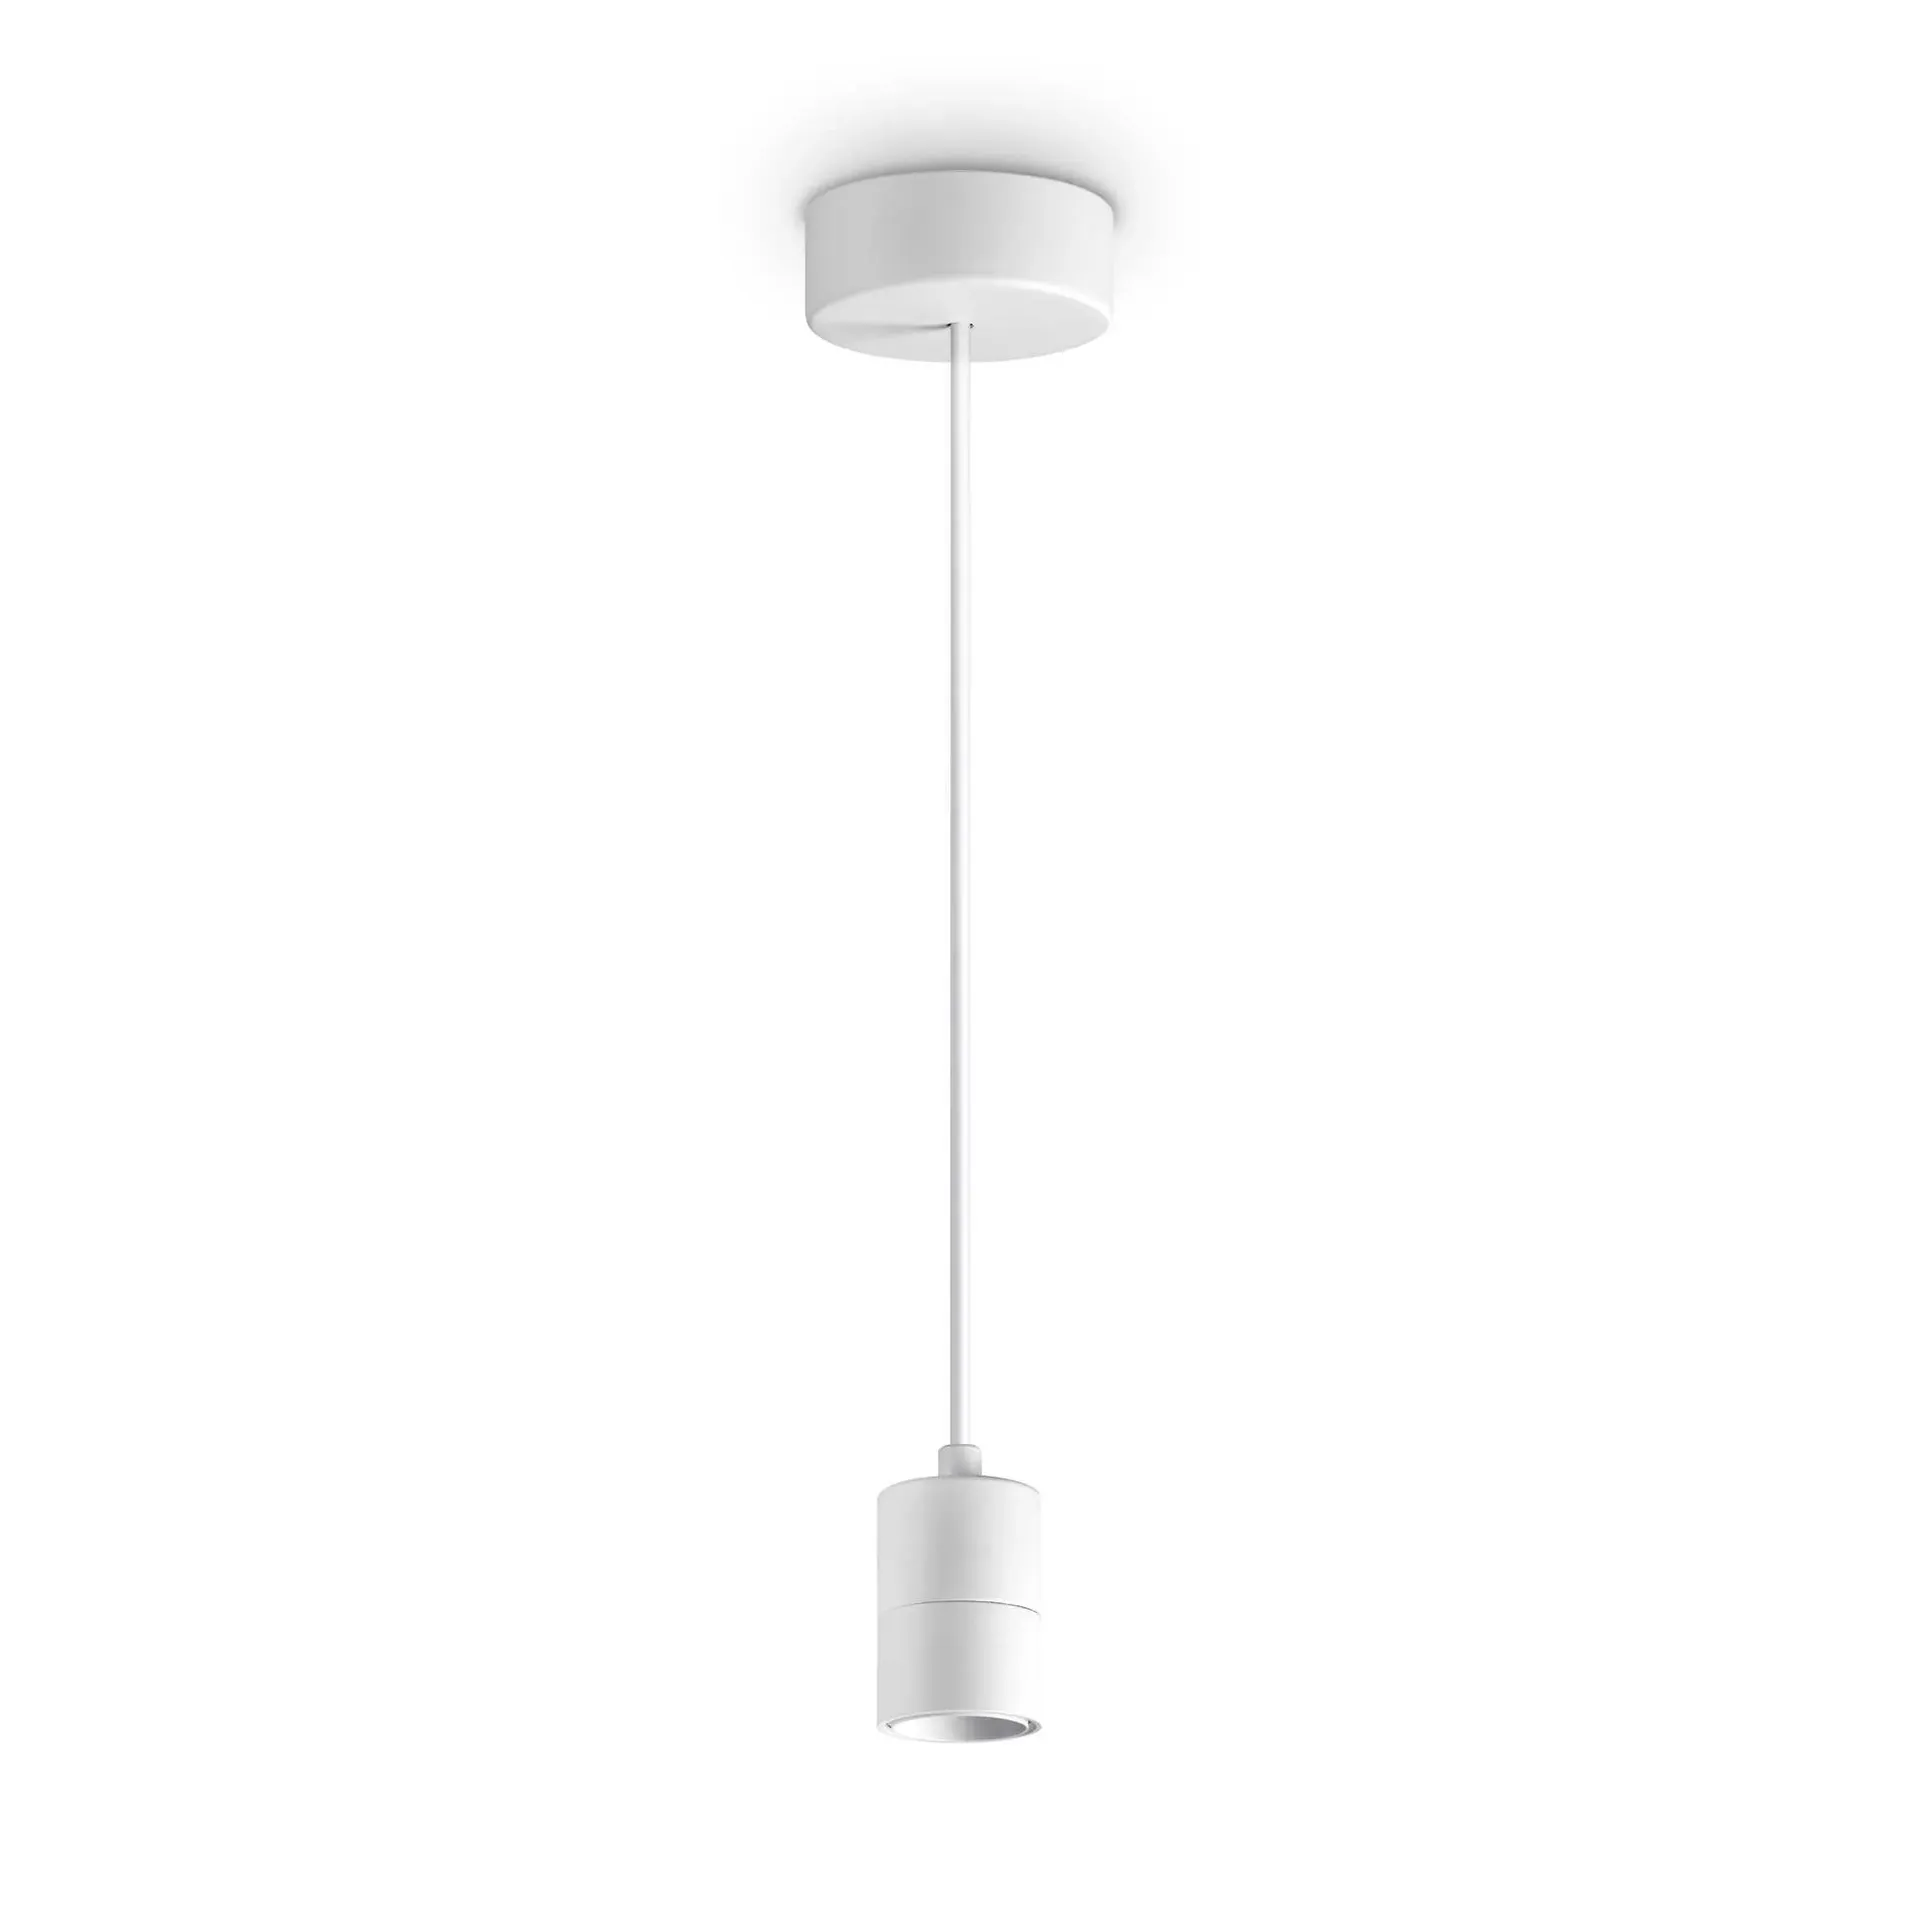 Ideal Lux Lampa wisząca SET UP MSP biała 260013